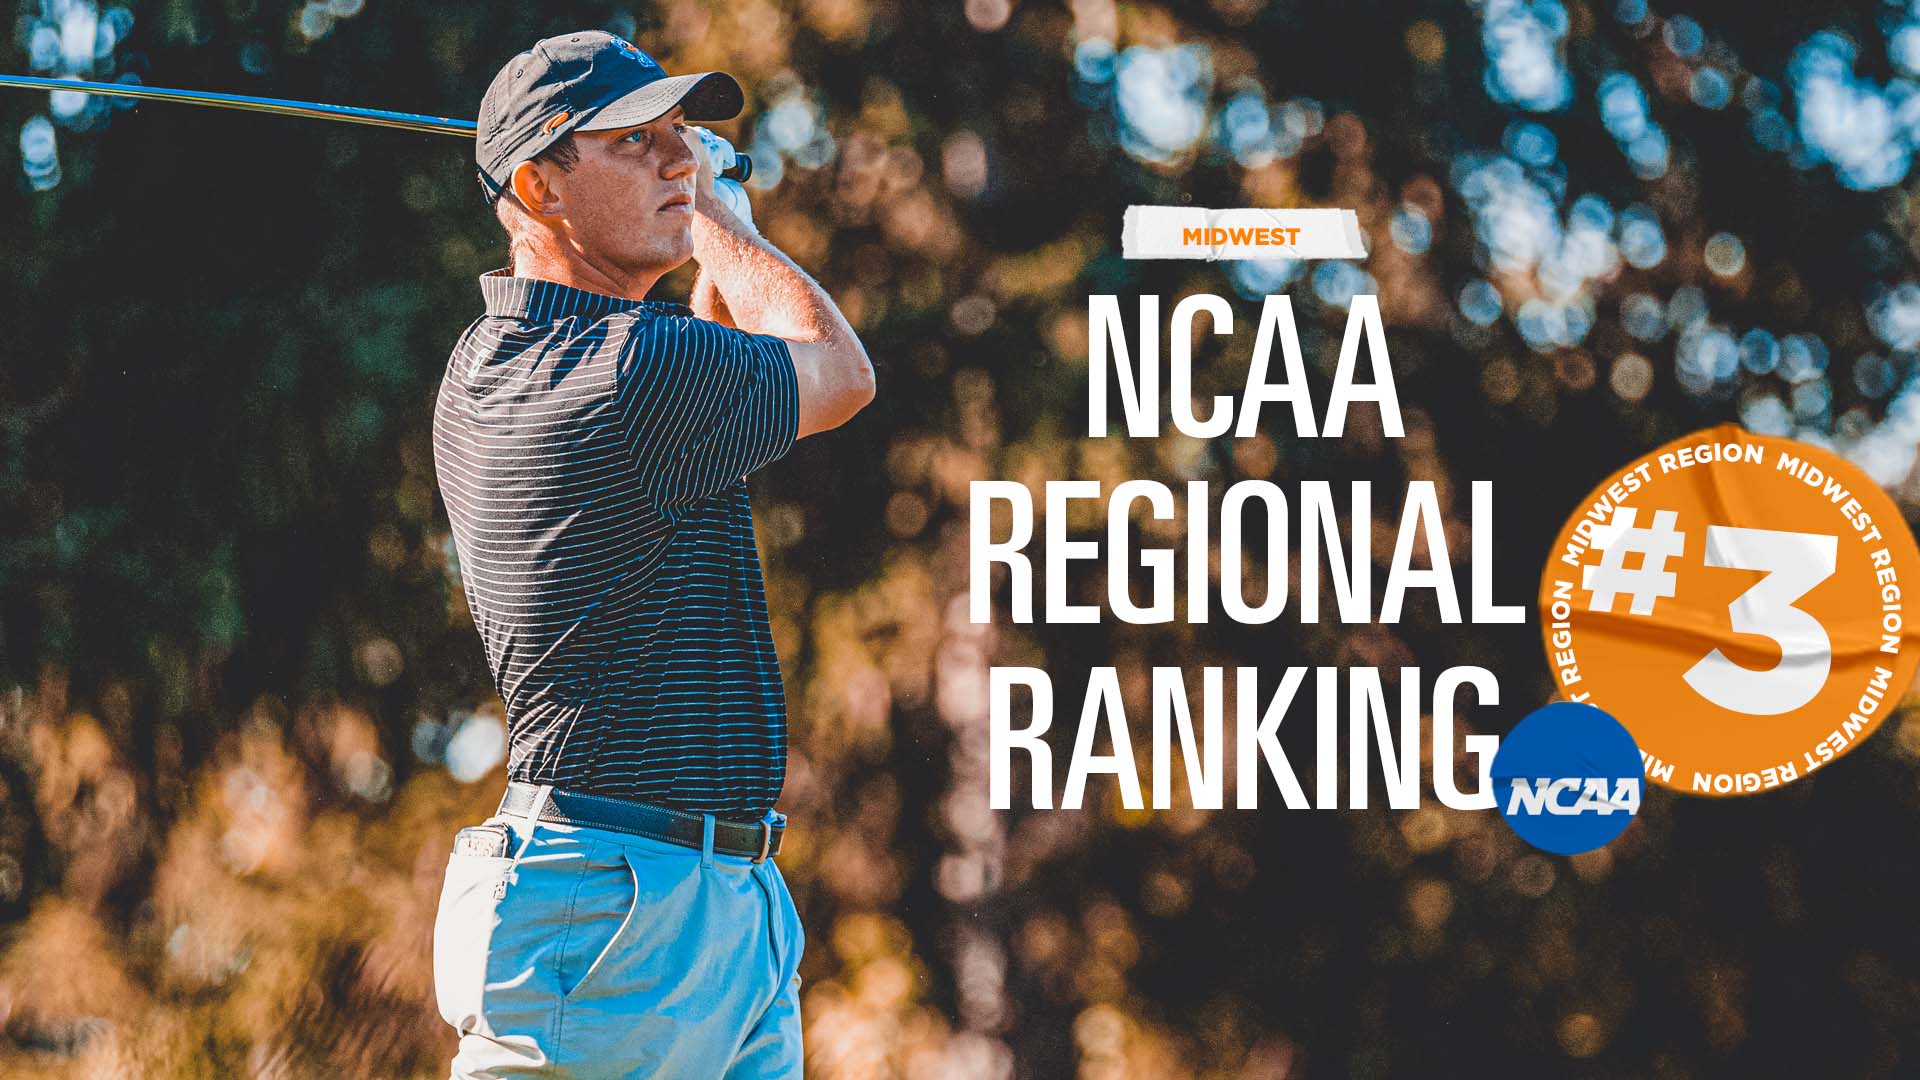 Men's Golf in Third in Midwest Regional Rankings